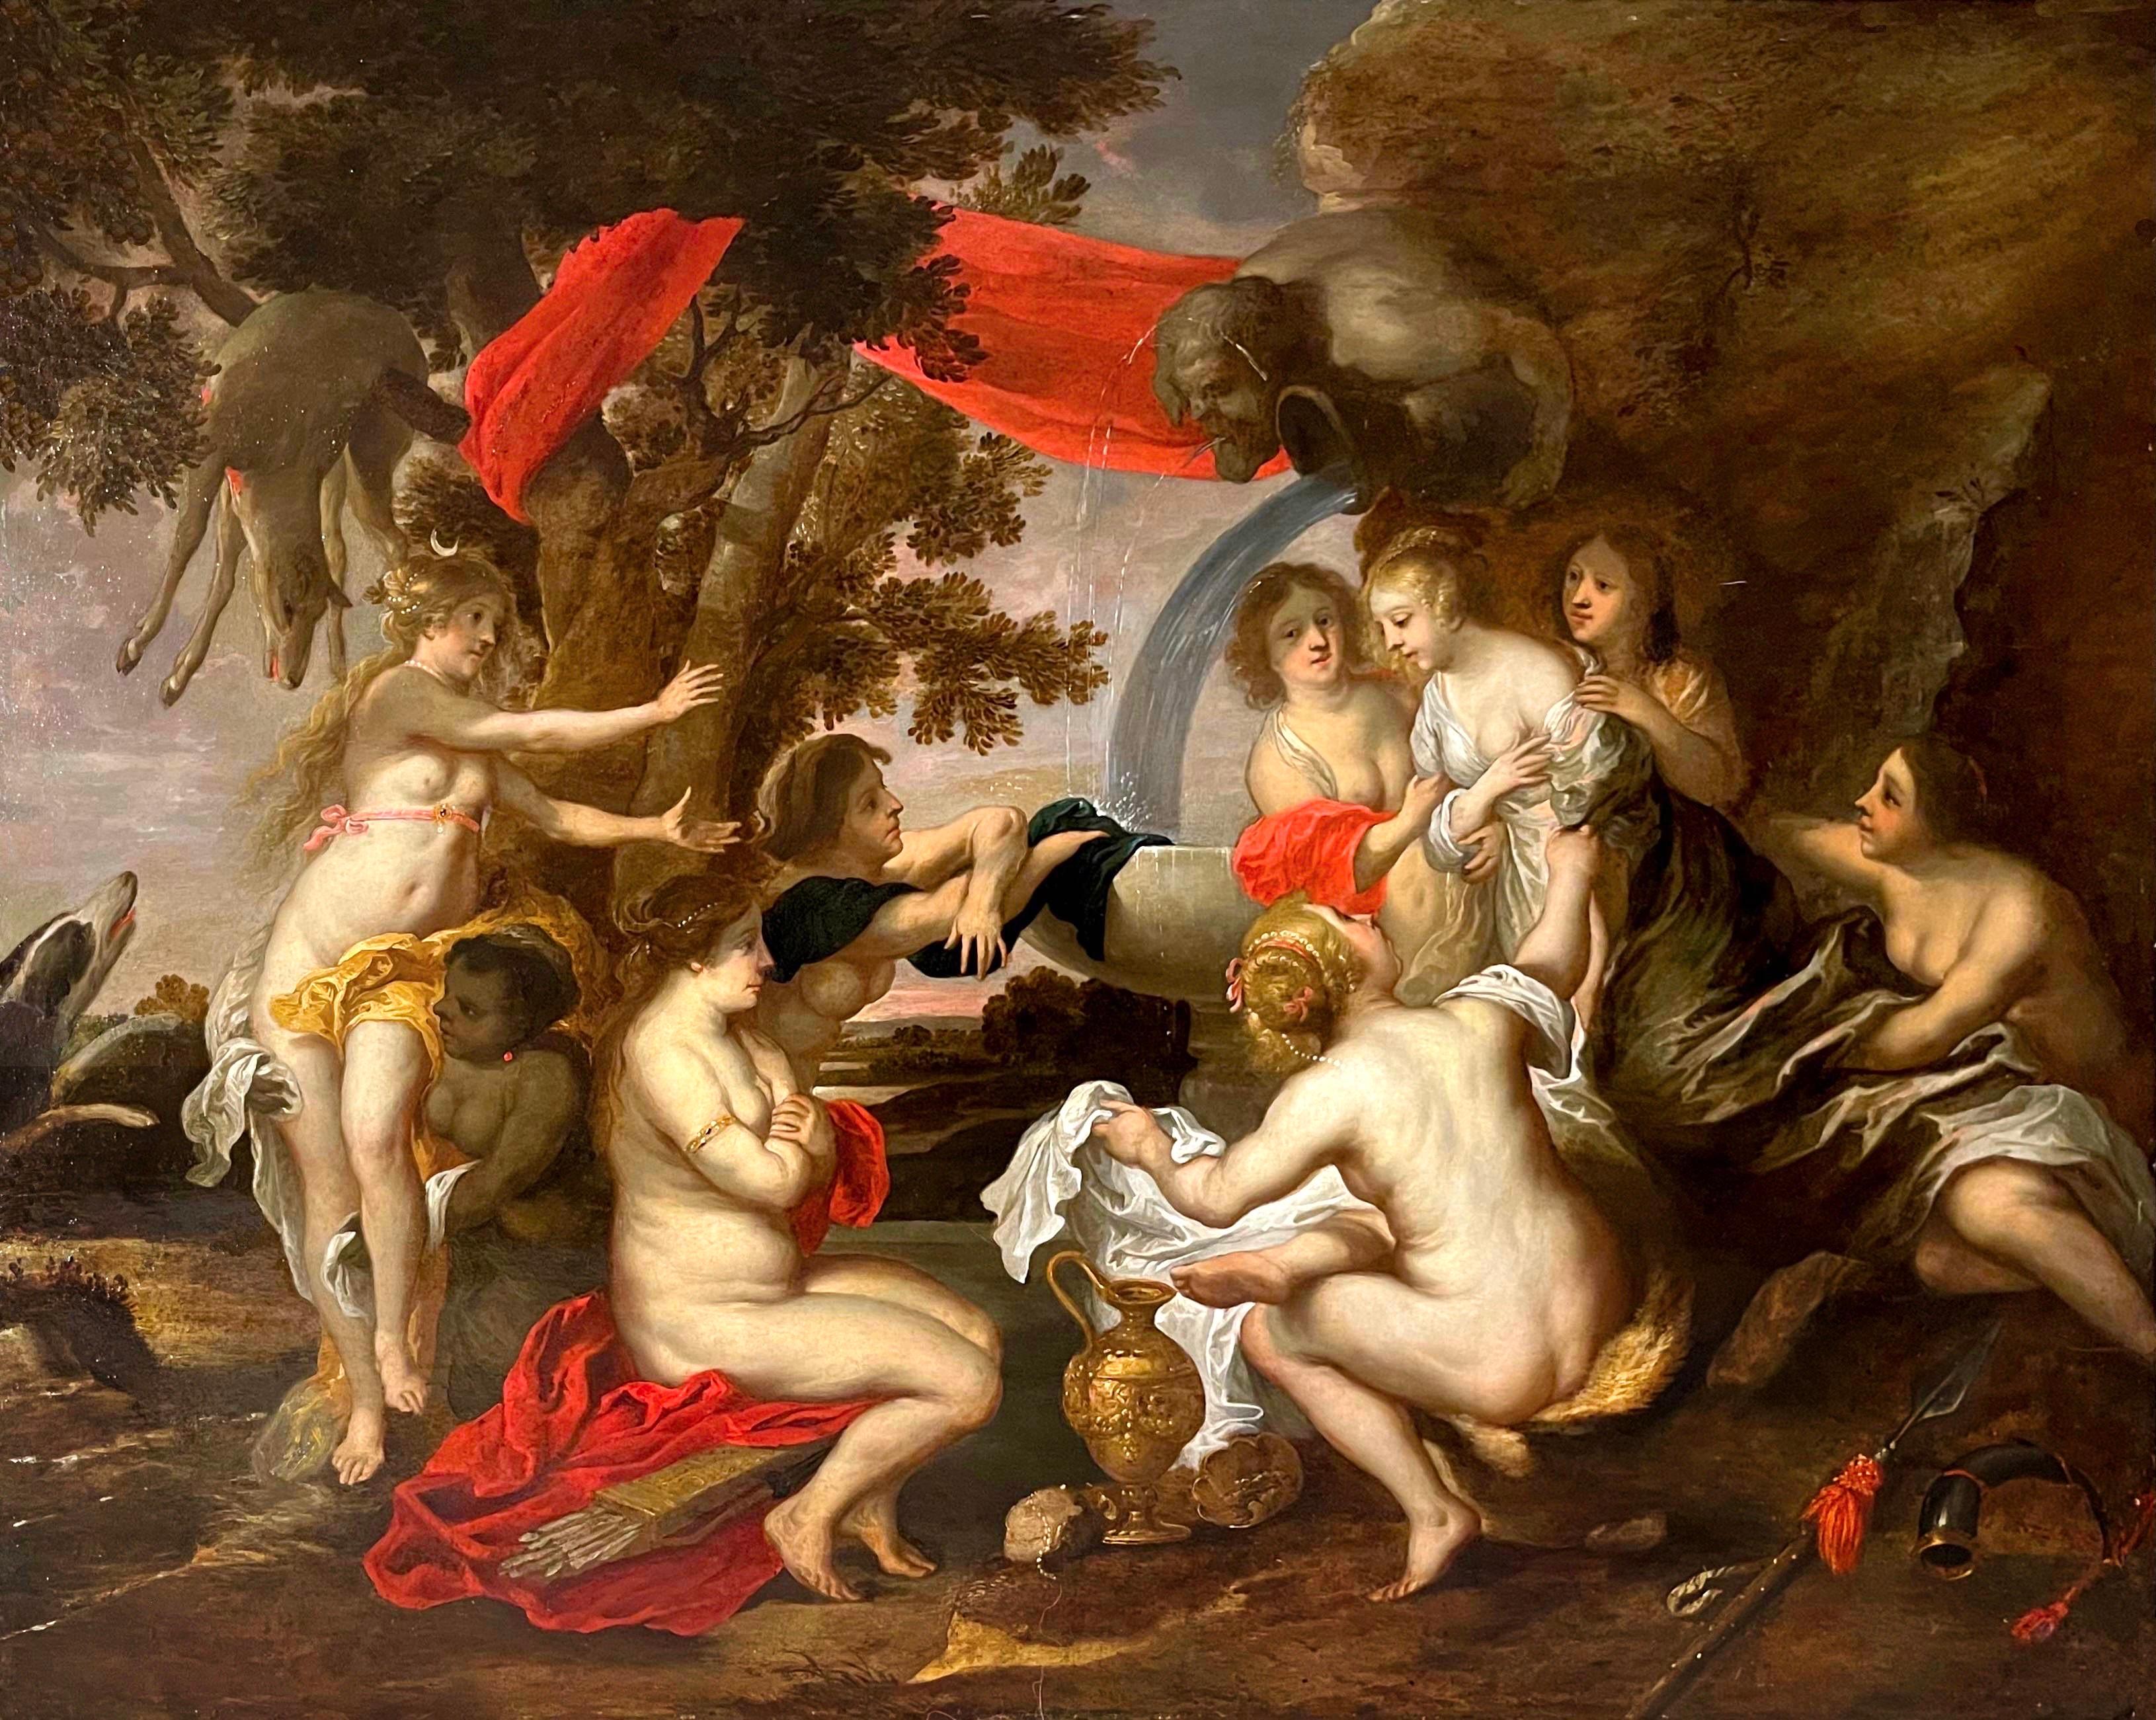 Großes altmeisterliches flämisches Gemälde aus dem 17. Jahrhundert - Diana und Kallisto - Rubens